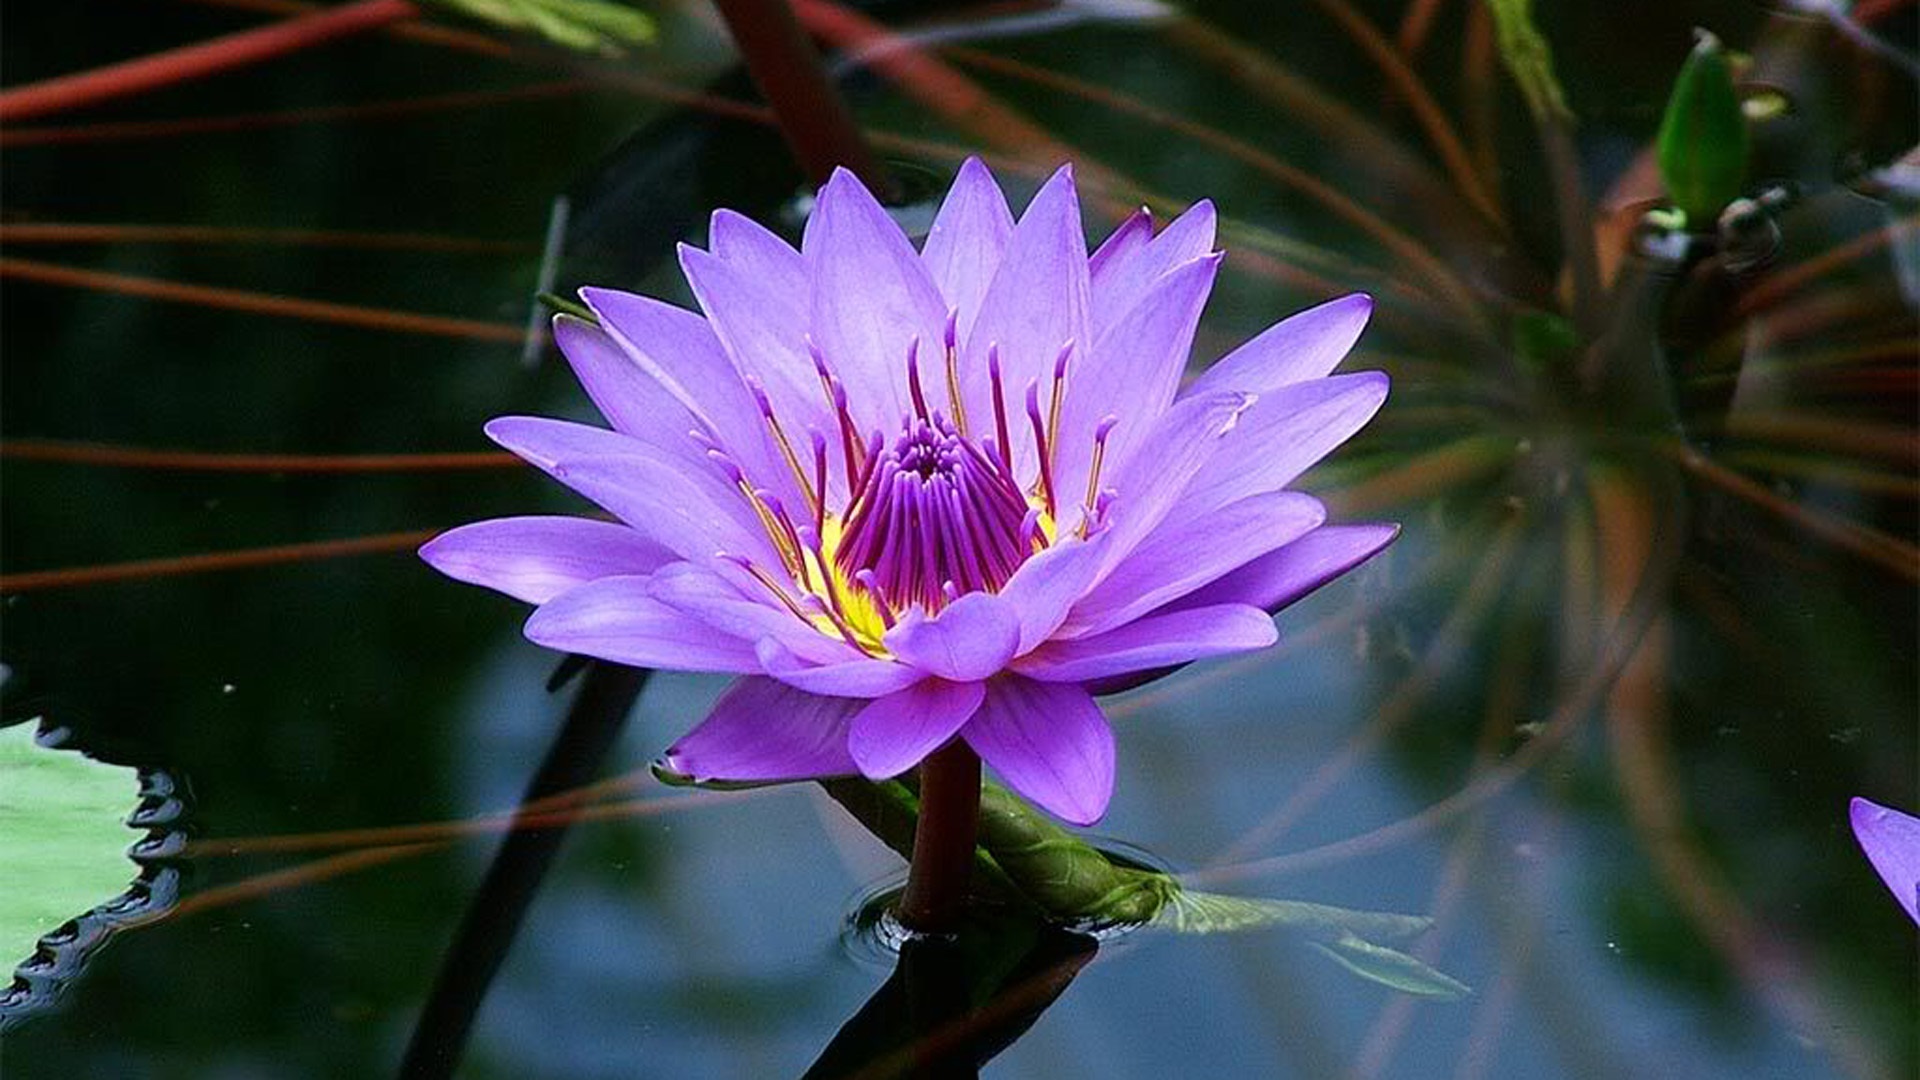 Purple Lotus Flower On Water - HD Wallpaper 